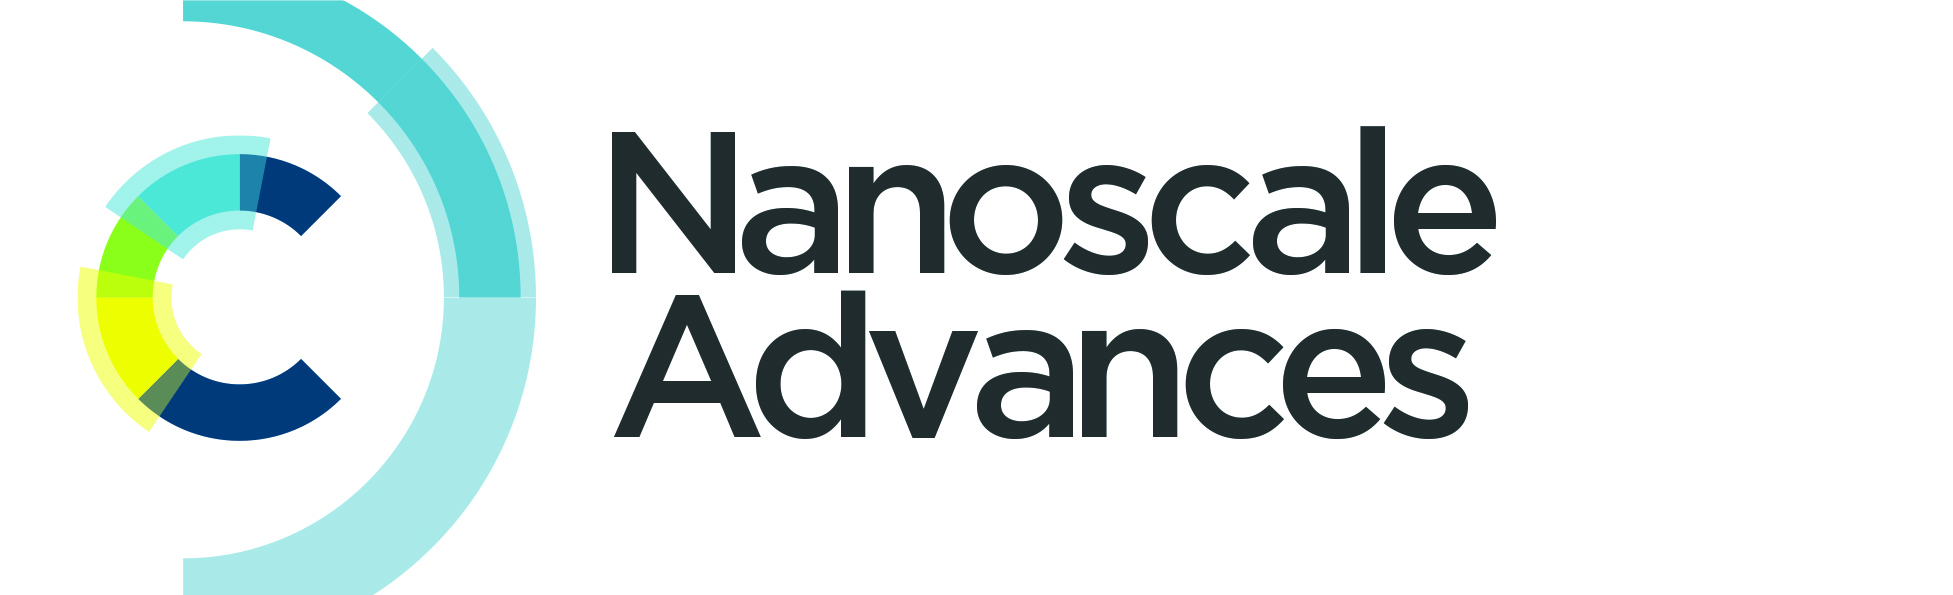 NanoAdvances